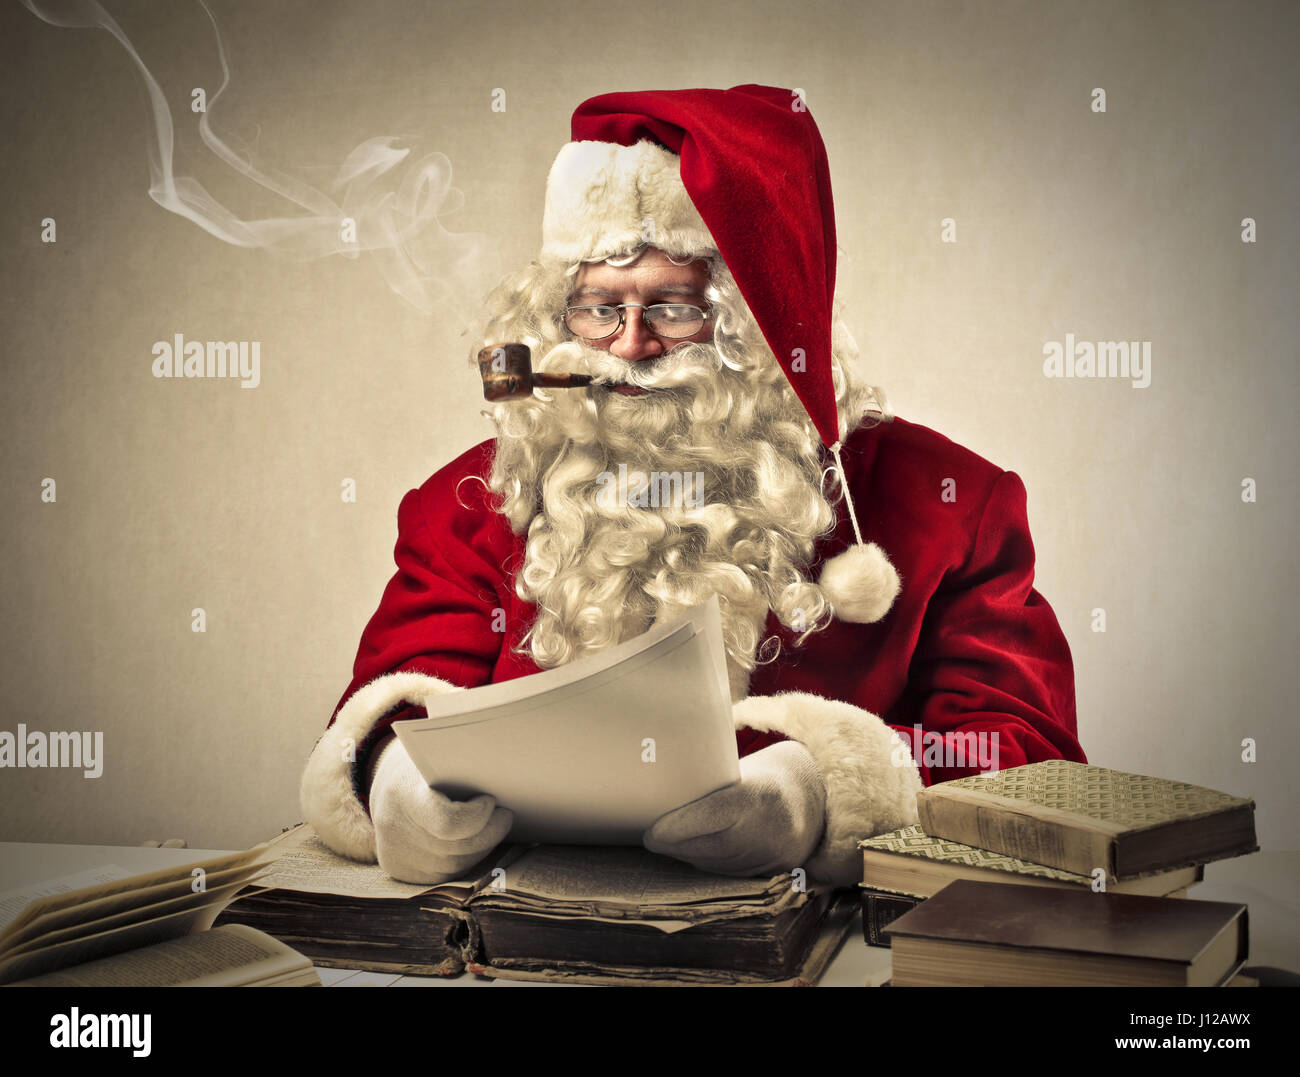 Santa smoking with pipe Stock Photo